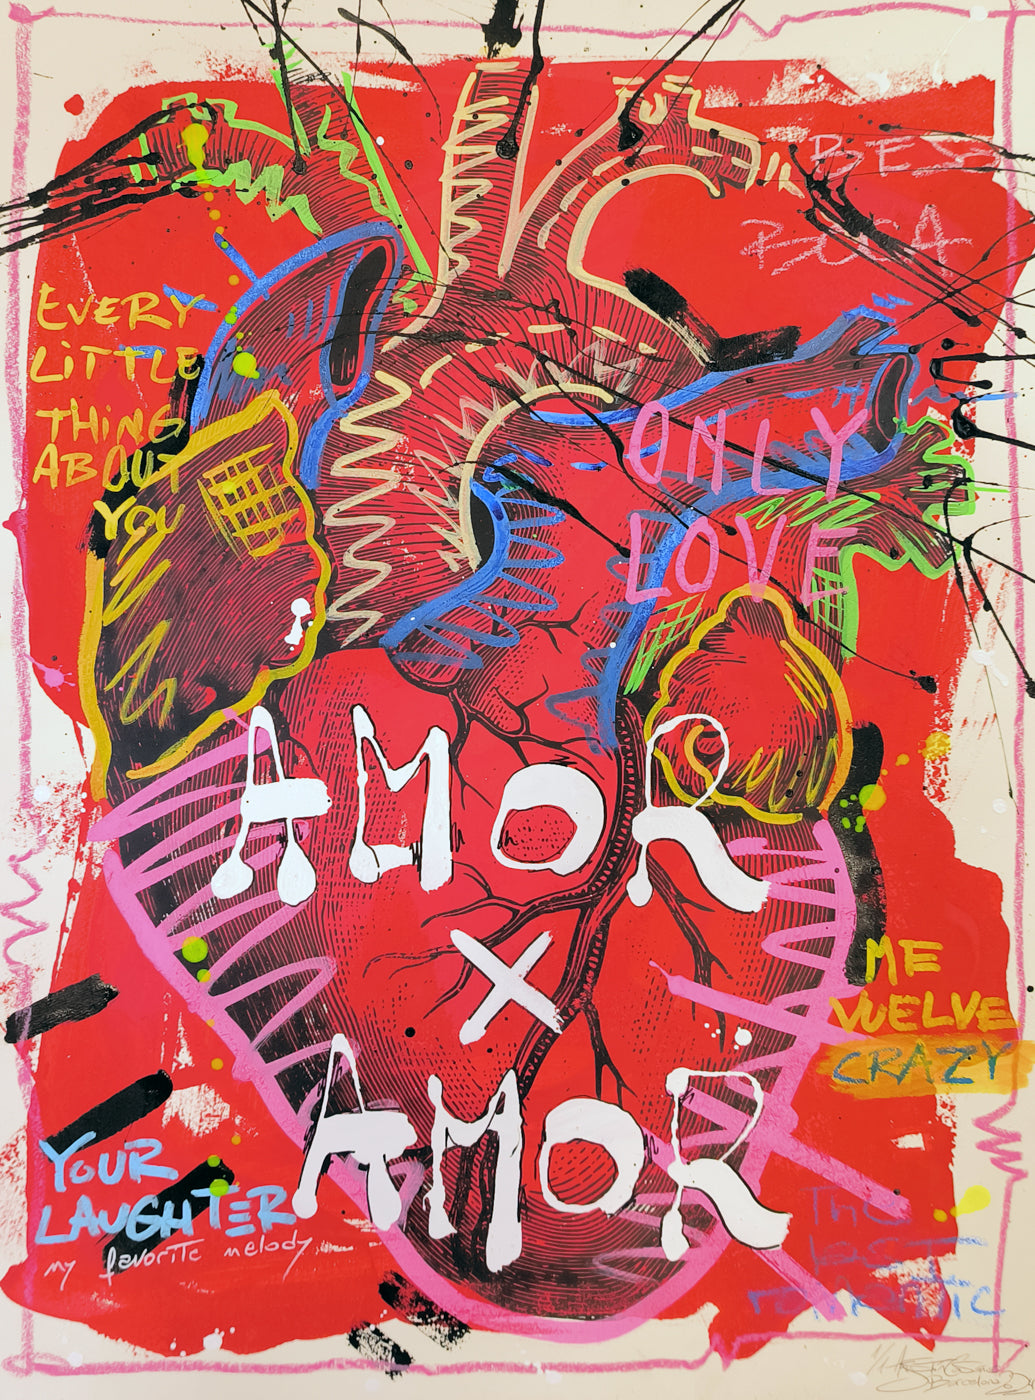 Corazón Intervenido: Palabras de Amor en el Arte Urbano Contemporáneo - Retrato Print (original painting on paper)